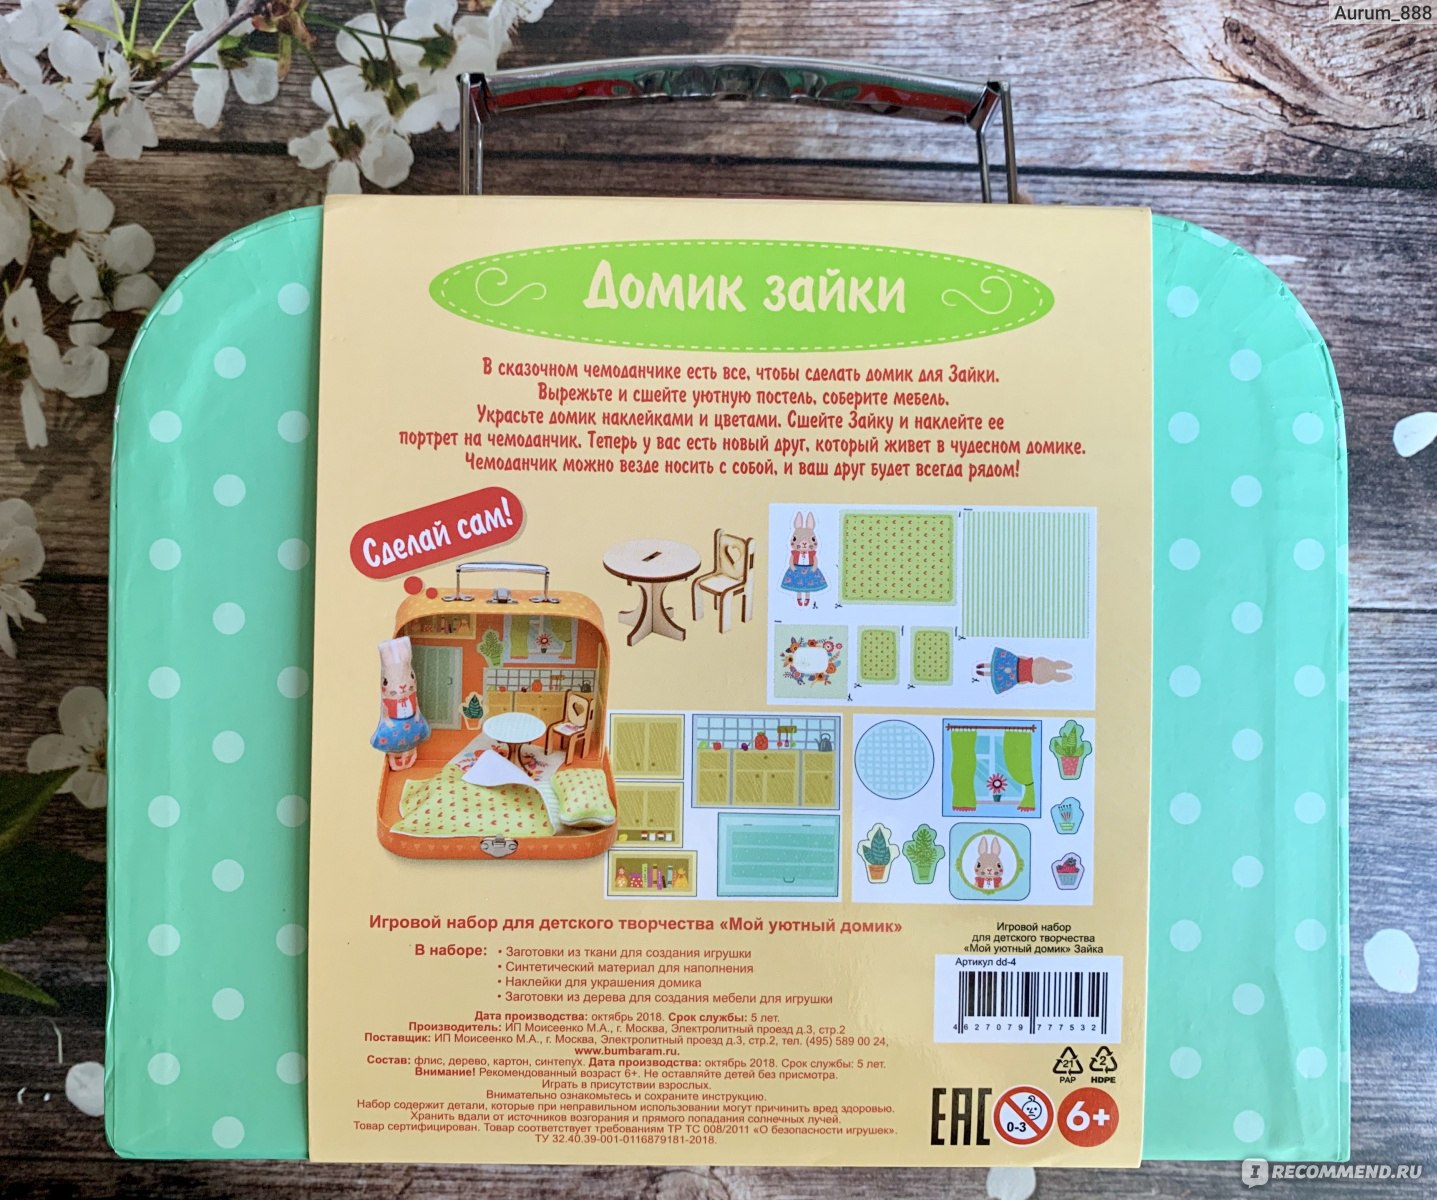 Bumbaram Игровой набор для детского творчества «Мой уютный домик» Зайка Арт. add-4 фото